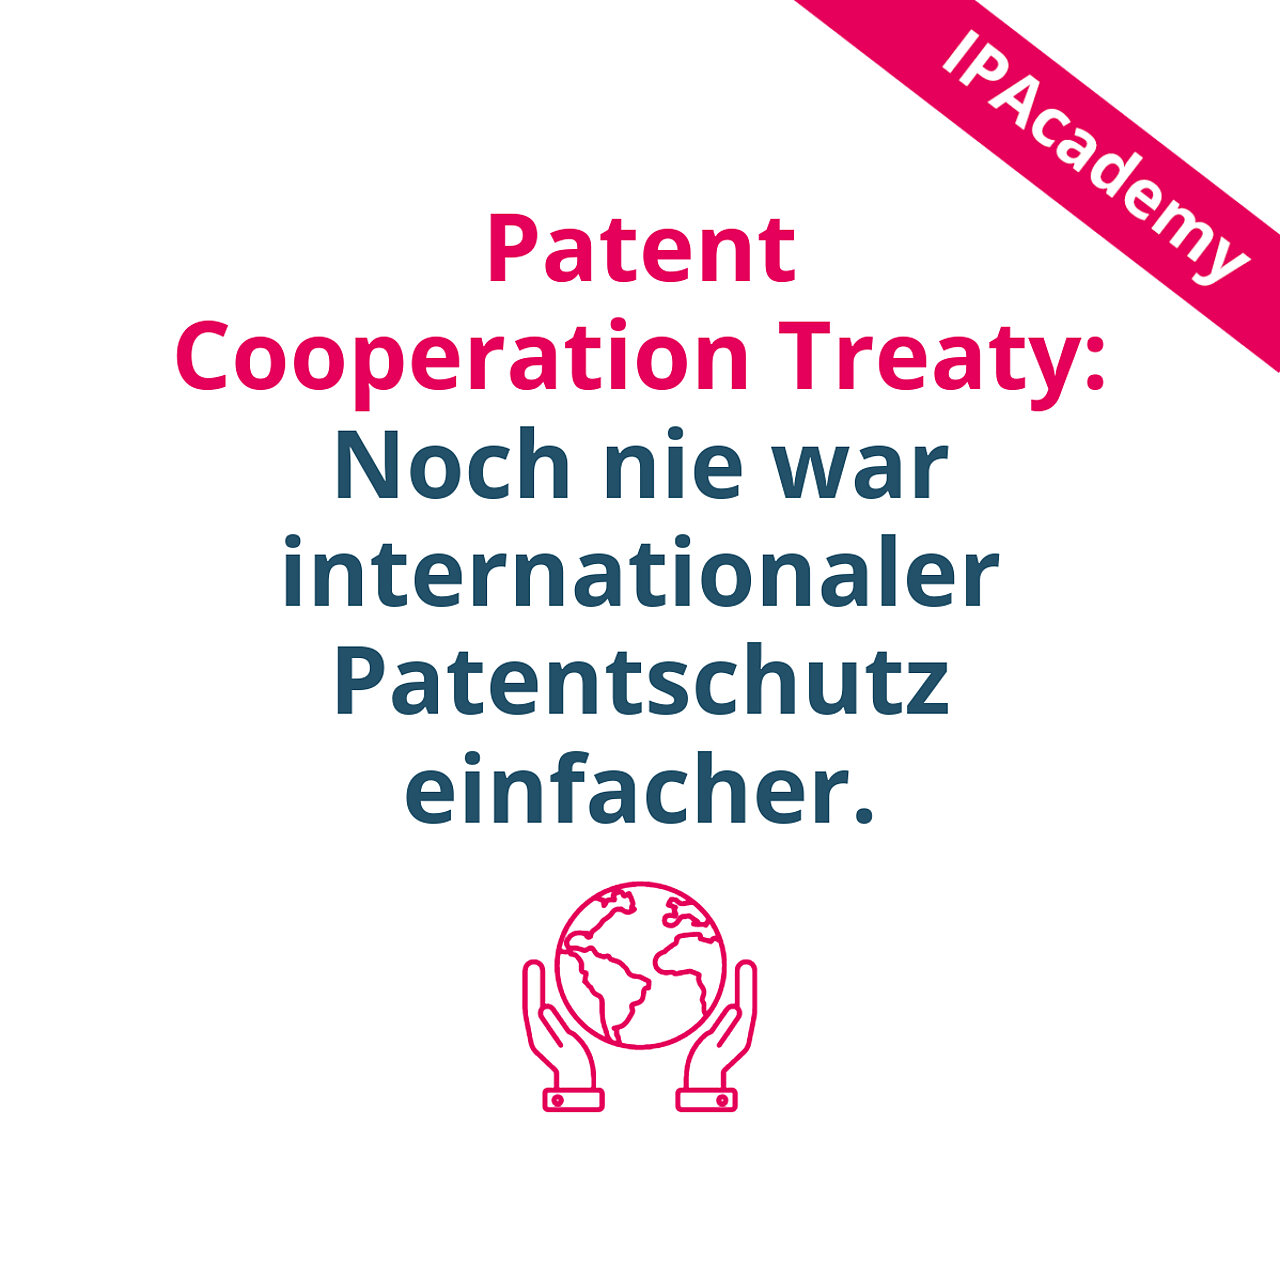 Patent Cooperation Treaty: Noch nie war internationaler Patentschutz einfacher.